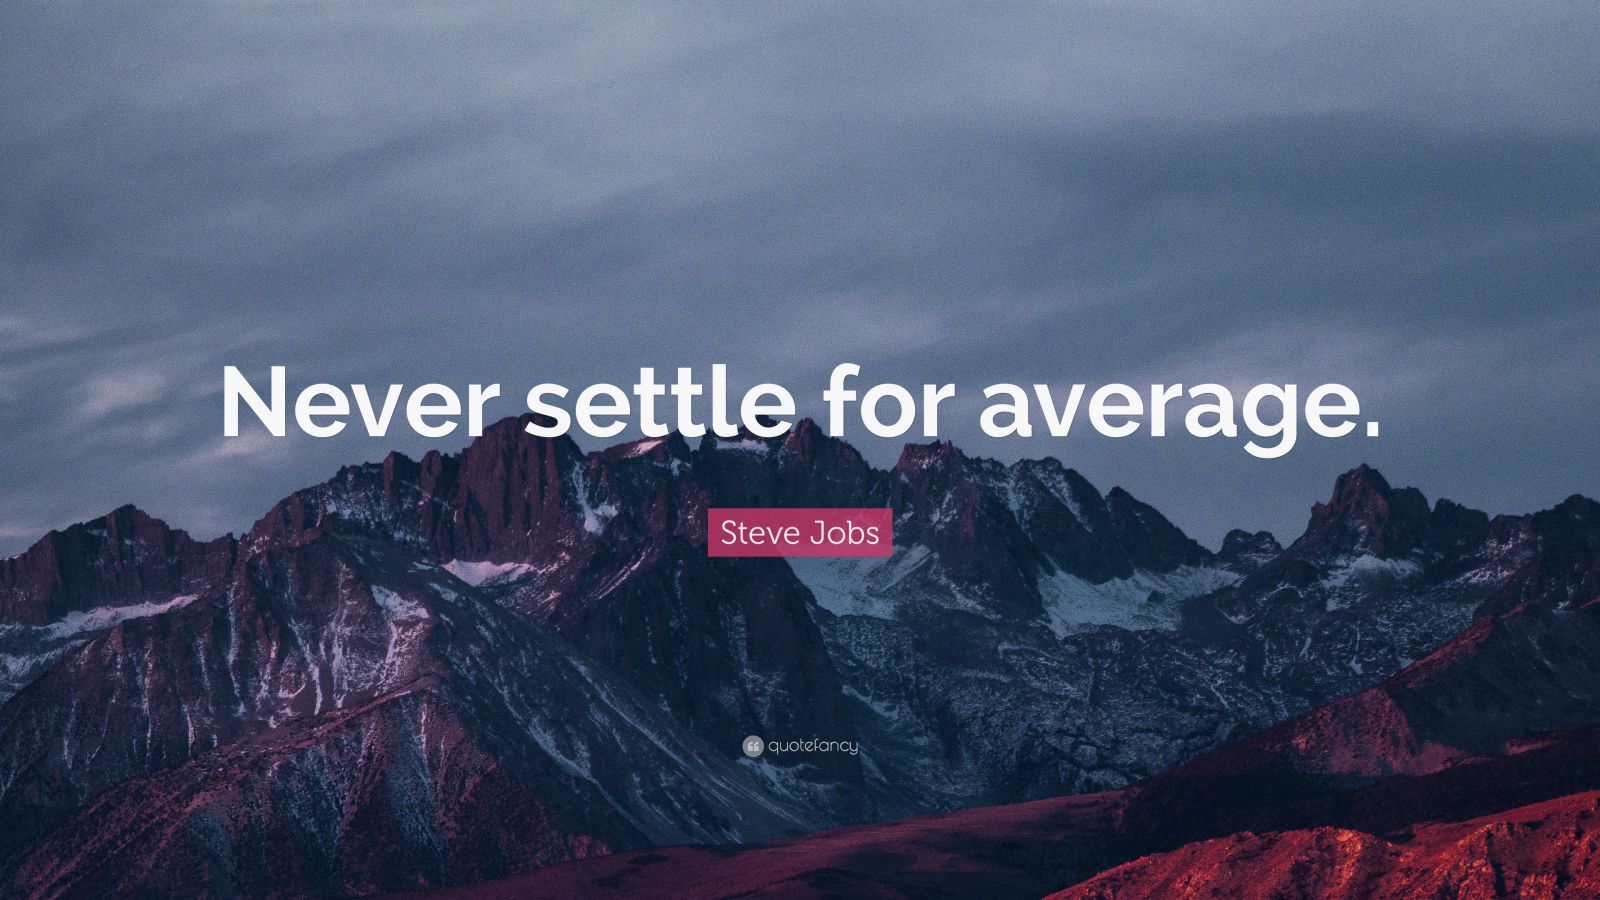 Steve Jobs Quote: “Never settle for average.”